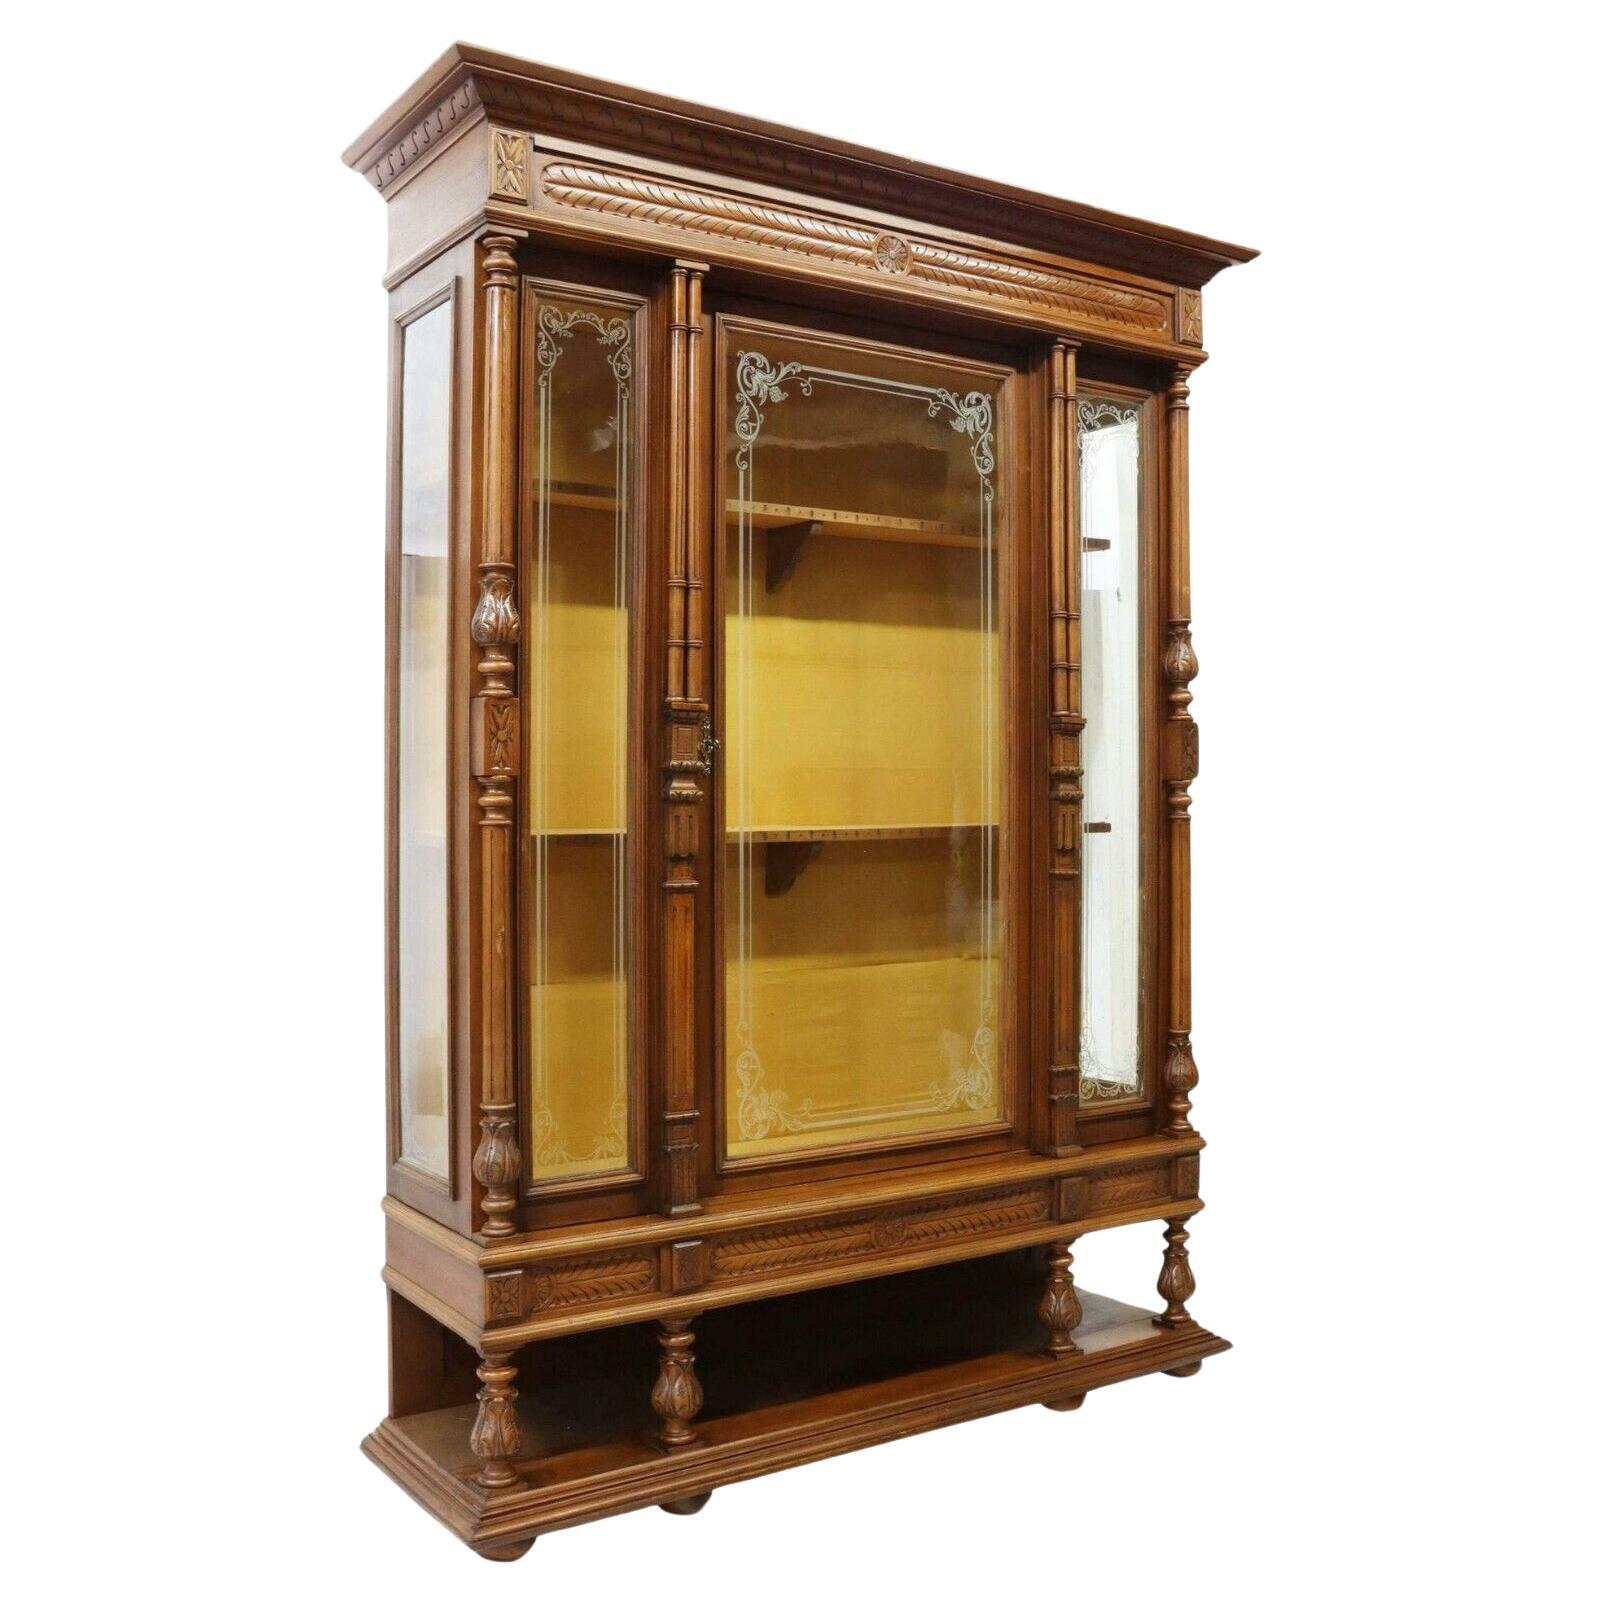 Antikes Bücherregal aus geätztem Glas im französischen Henri-II-Stil aus Nussbaumholz, 1800er Jahre